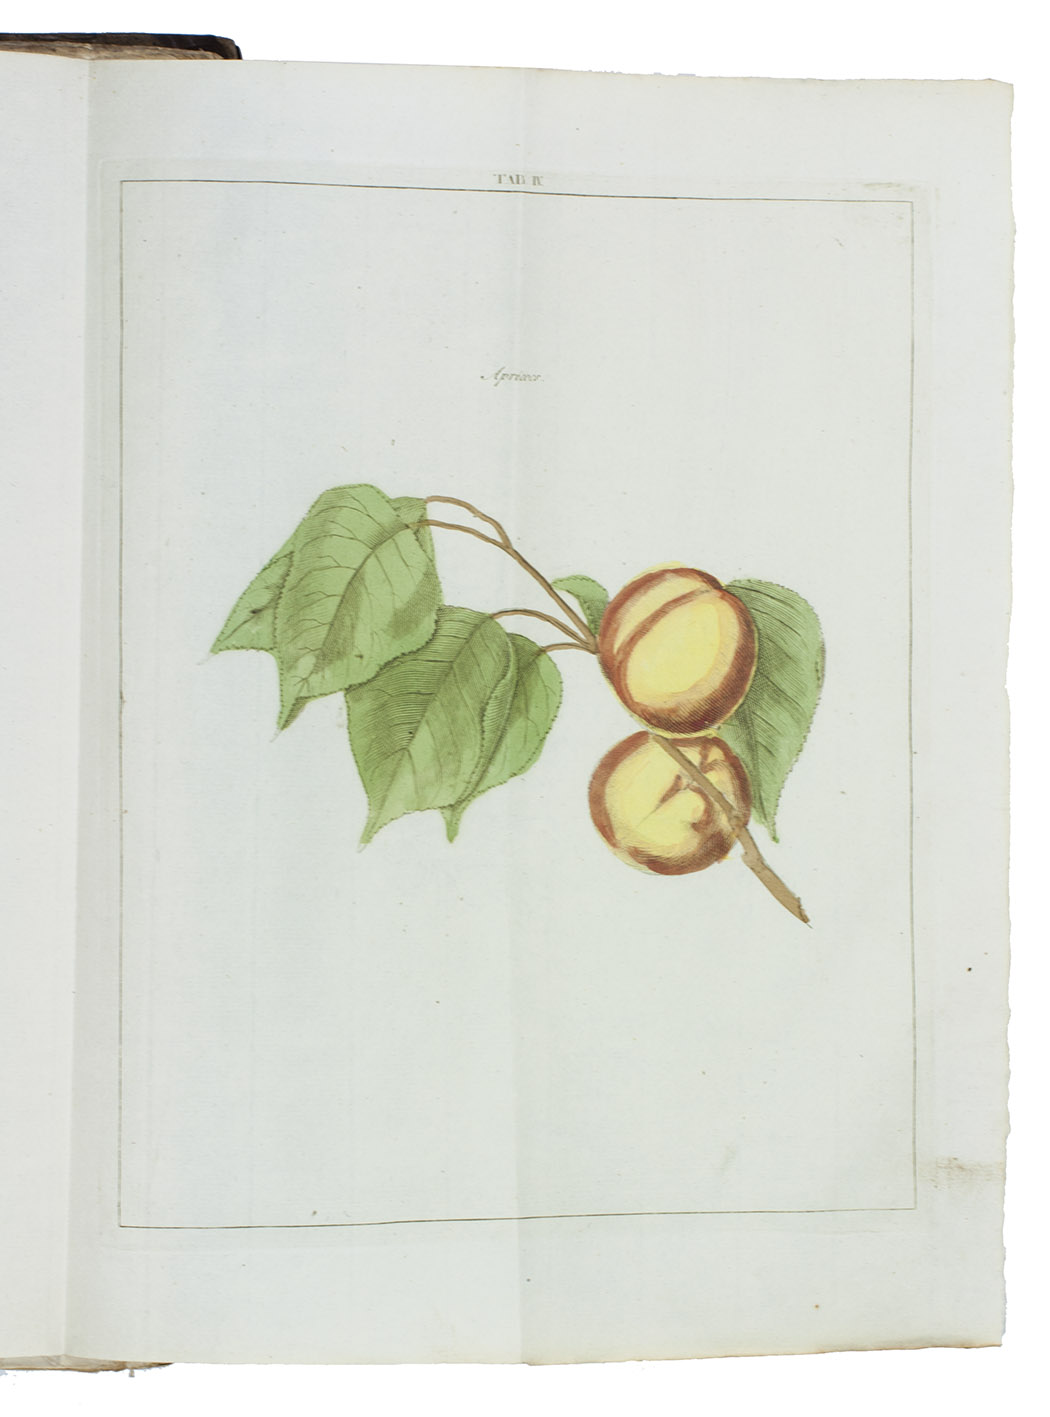 KNOOP, Johann Hermann. - Beschrijving en afbeeldingen van de beste soorten van appelen en peeren, ...With: (2) KNOOP, Johann Hermann. Beschrijving van vruchtboomen en vruchten, ...(3) KNOOP, Johann Hermann. Beschrijving van plantagie-gewassen, ...Amsterdam, Allart, Holtrop; Dordrecht, De Leeuw, Krap, 1790. 3 works in 1 volume. Folio. With 39 folding engraved plates (12 of apples & 8 of pears in the first work, showing 90 sorts; 19 of fruit and nut trees in the second work, showing 24 sorts). All coloured by a contemporary hand. Contemporary half calf, gold-tooled spine.